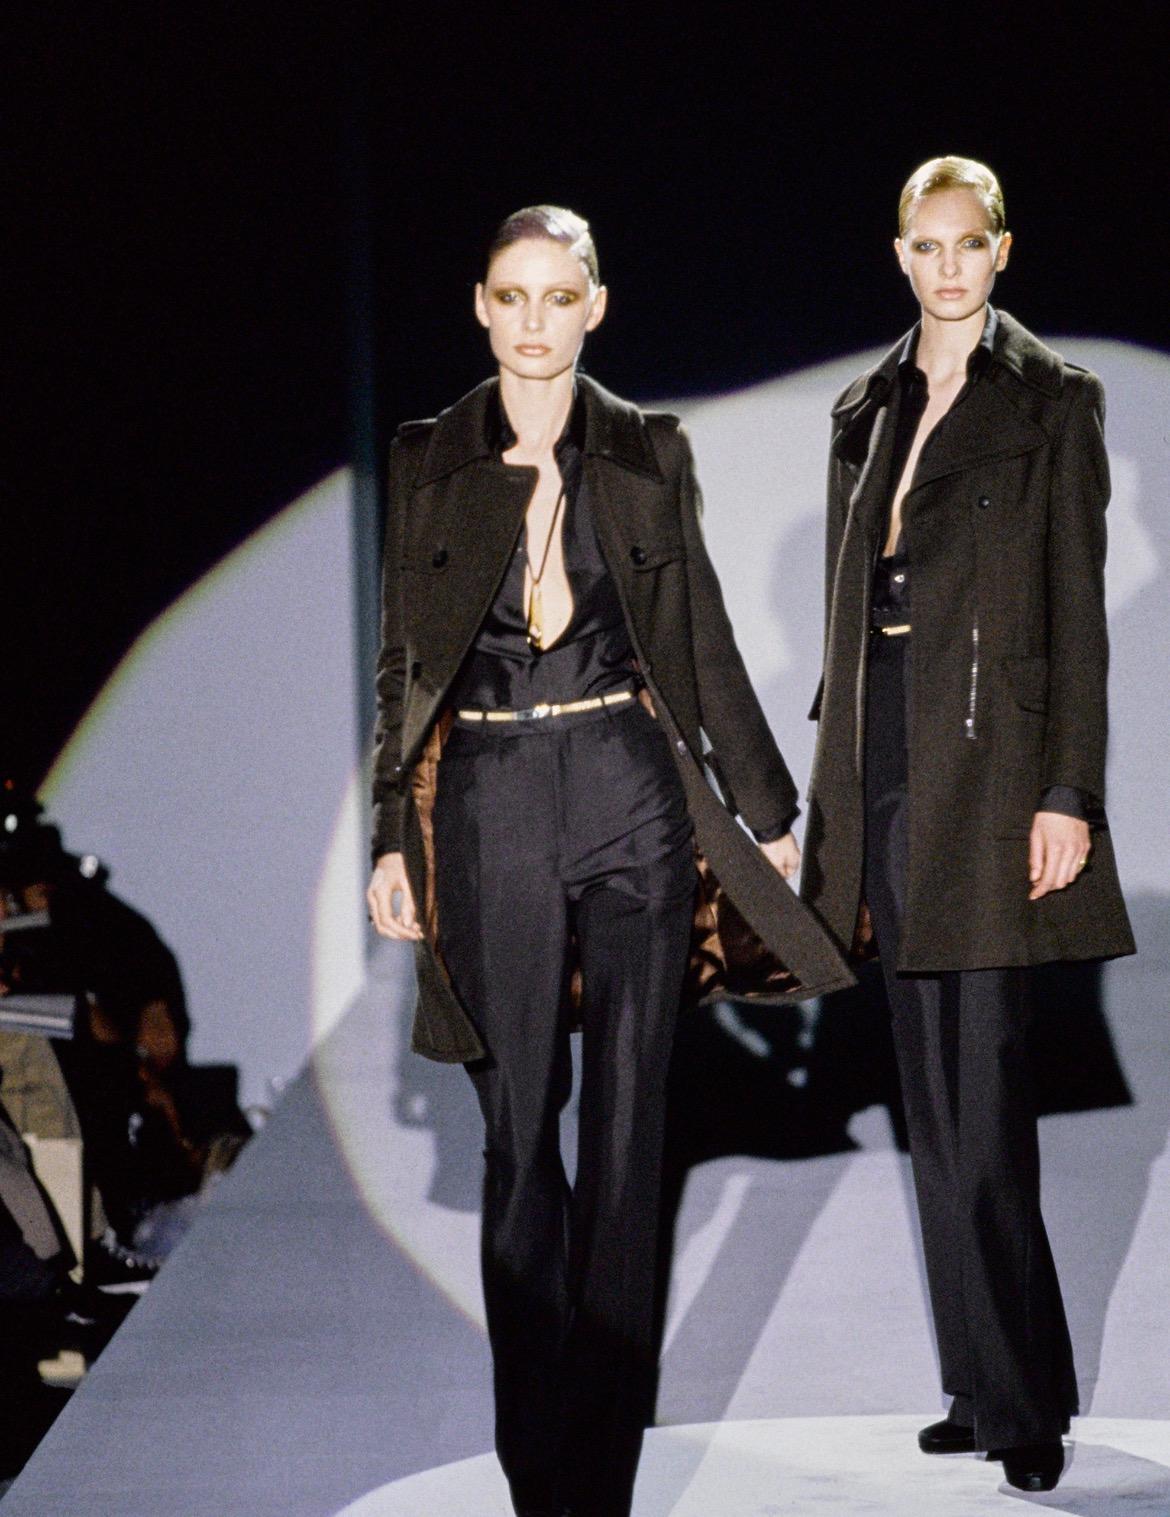 Wir präsentieren einen unglaublichen Gucci-Mantel aus schwarzer Wolle, entworfen von Tom Ford. Aus der Herbst/Winter-Kollektion 1996 wurden auf dem Laufsteg ähnlich geschnittene Mäntel in Braun und Marineblau gezeigt. Dieser fabelhafte Mantel hat